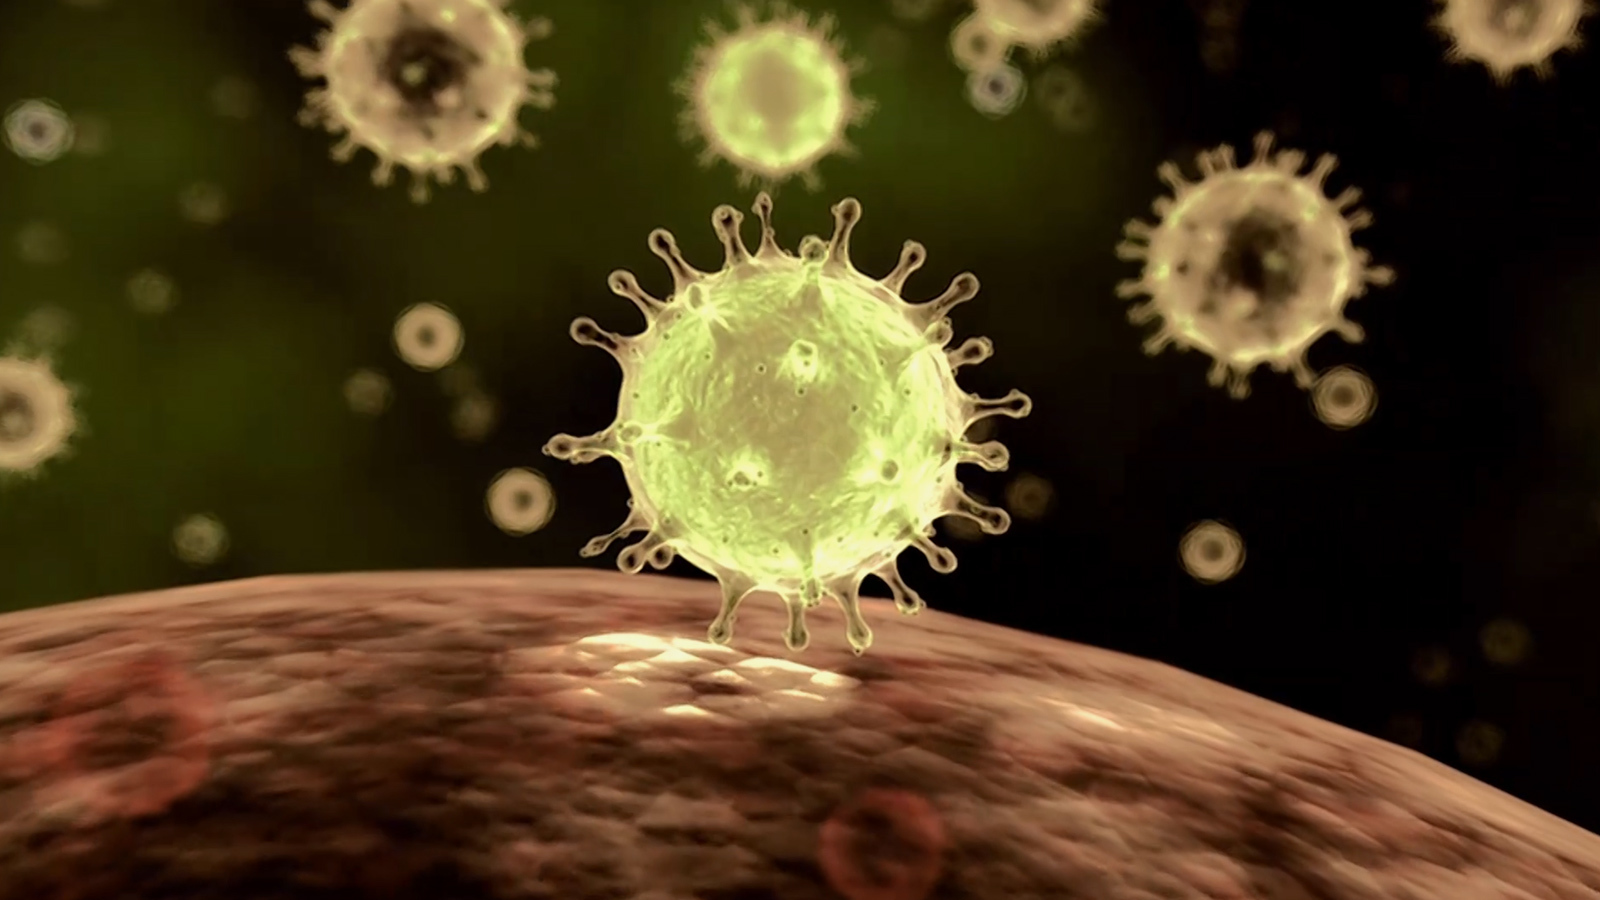 العقار الجديد قادر على منع انتشار فيروس كورونا